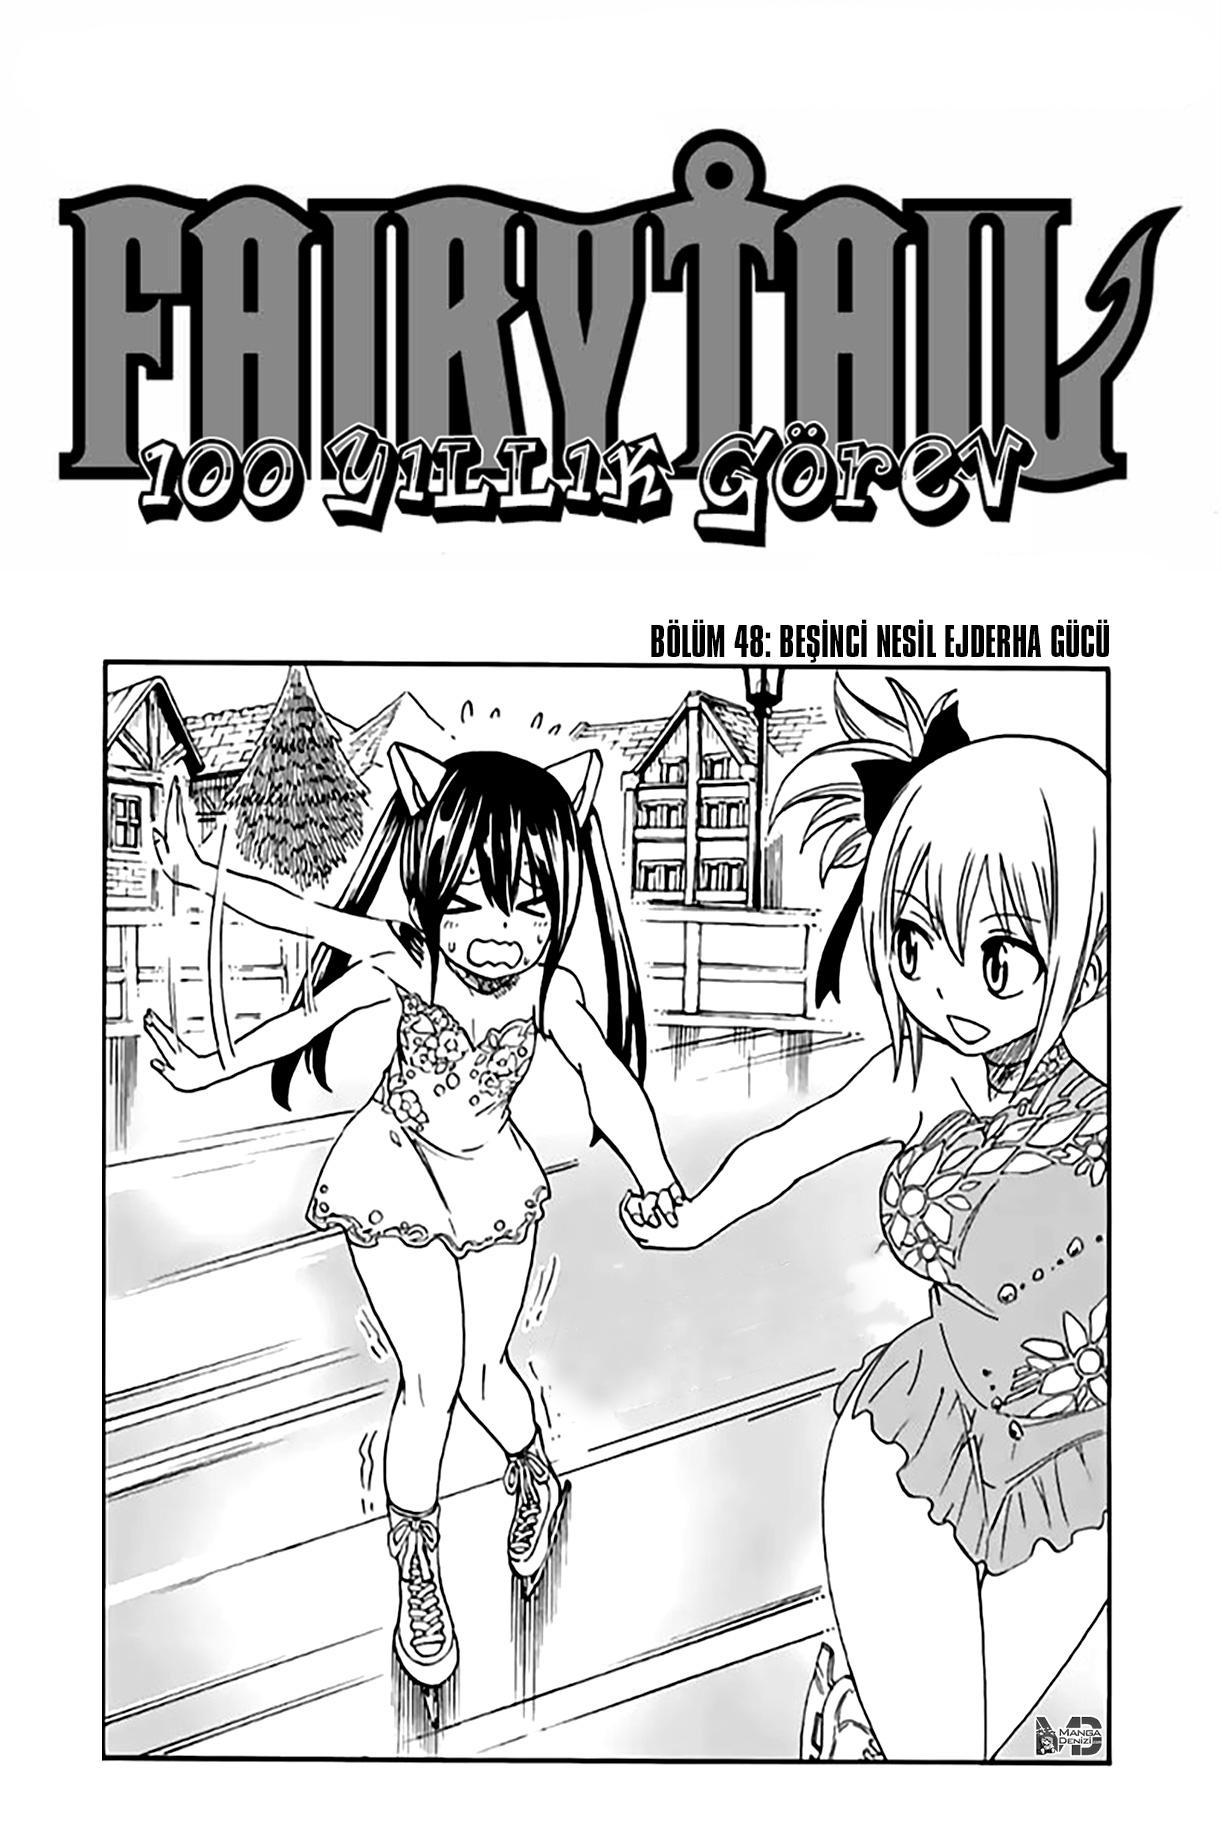 Fairy Tail: 100 Years Quest mangasının 048 bölümünün 2. sayfasını okuyorsunuz.